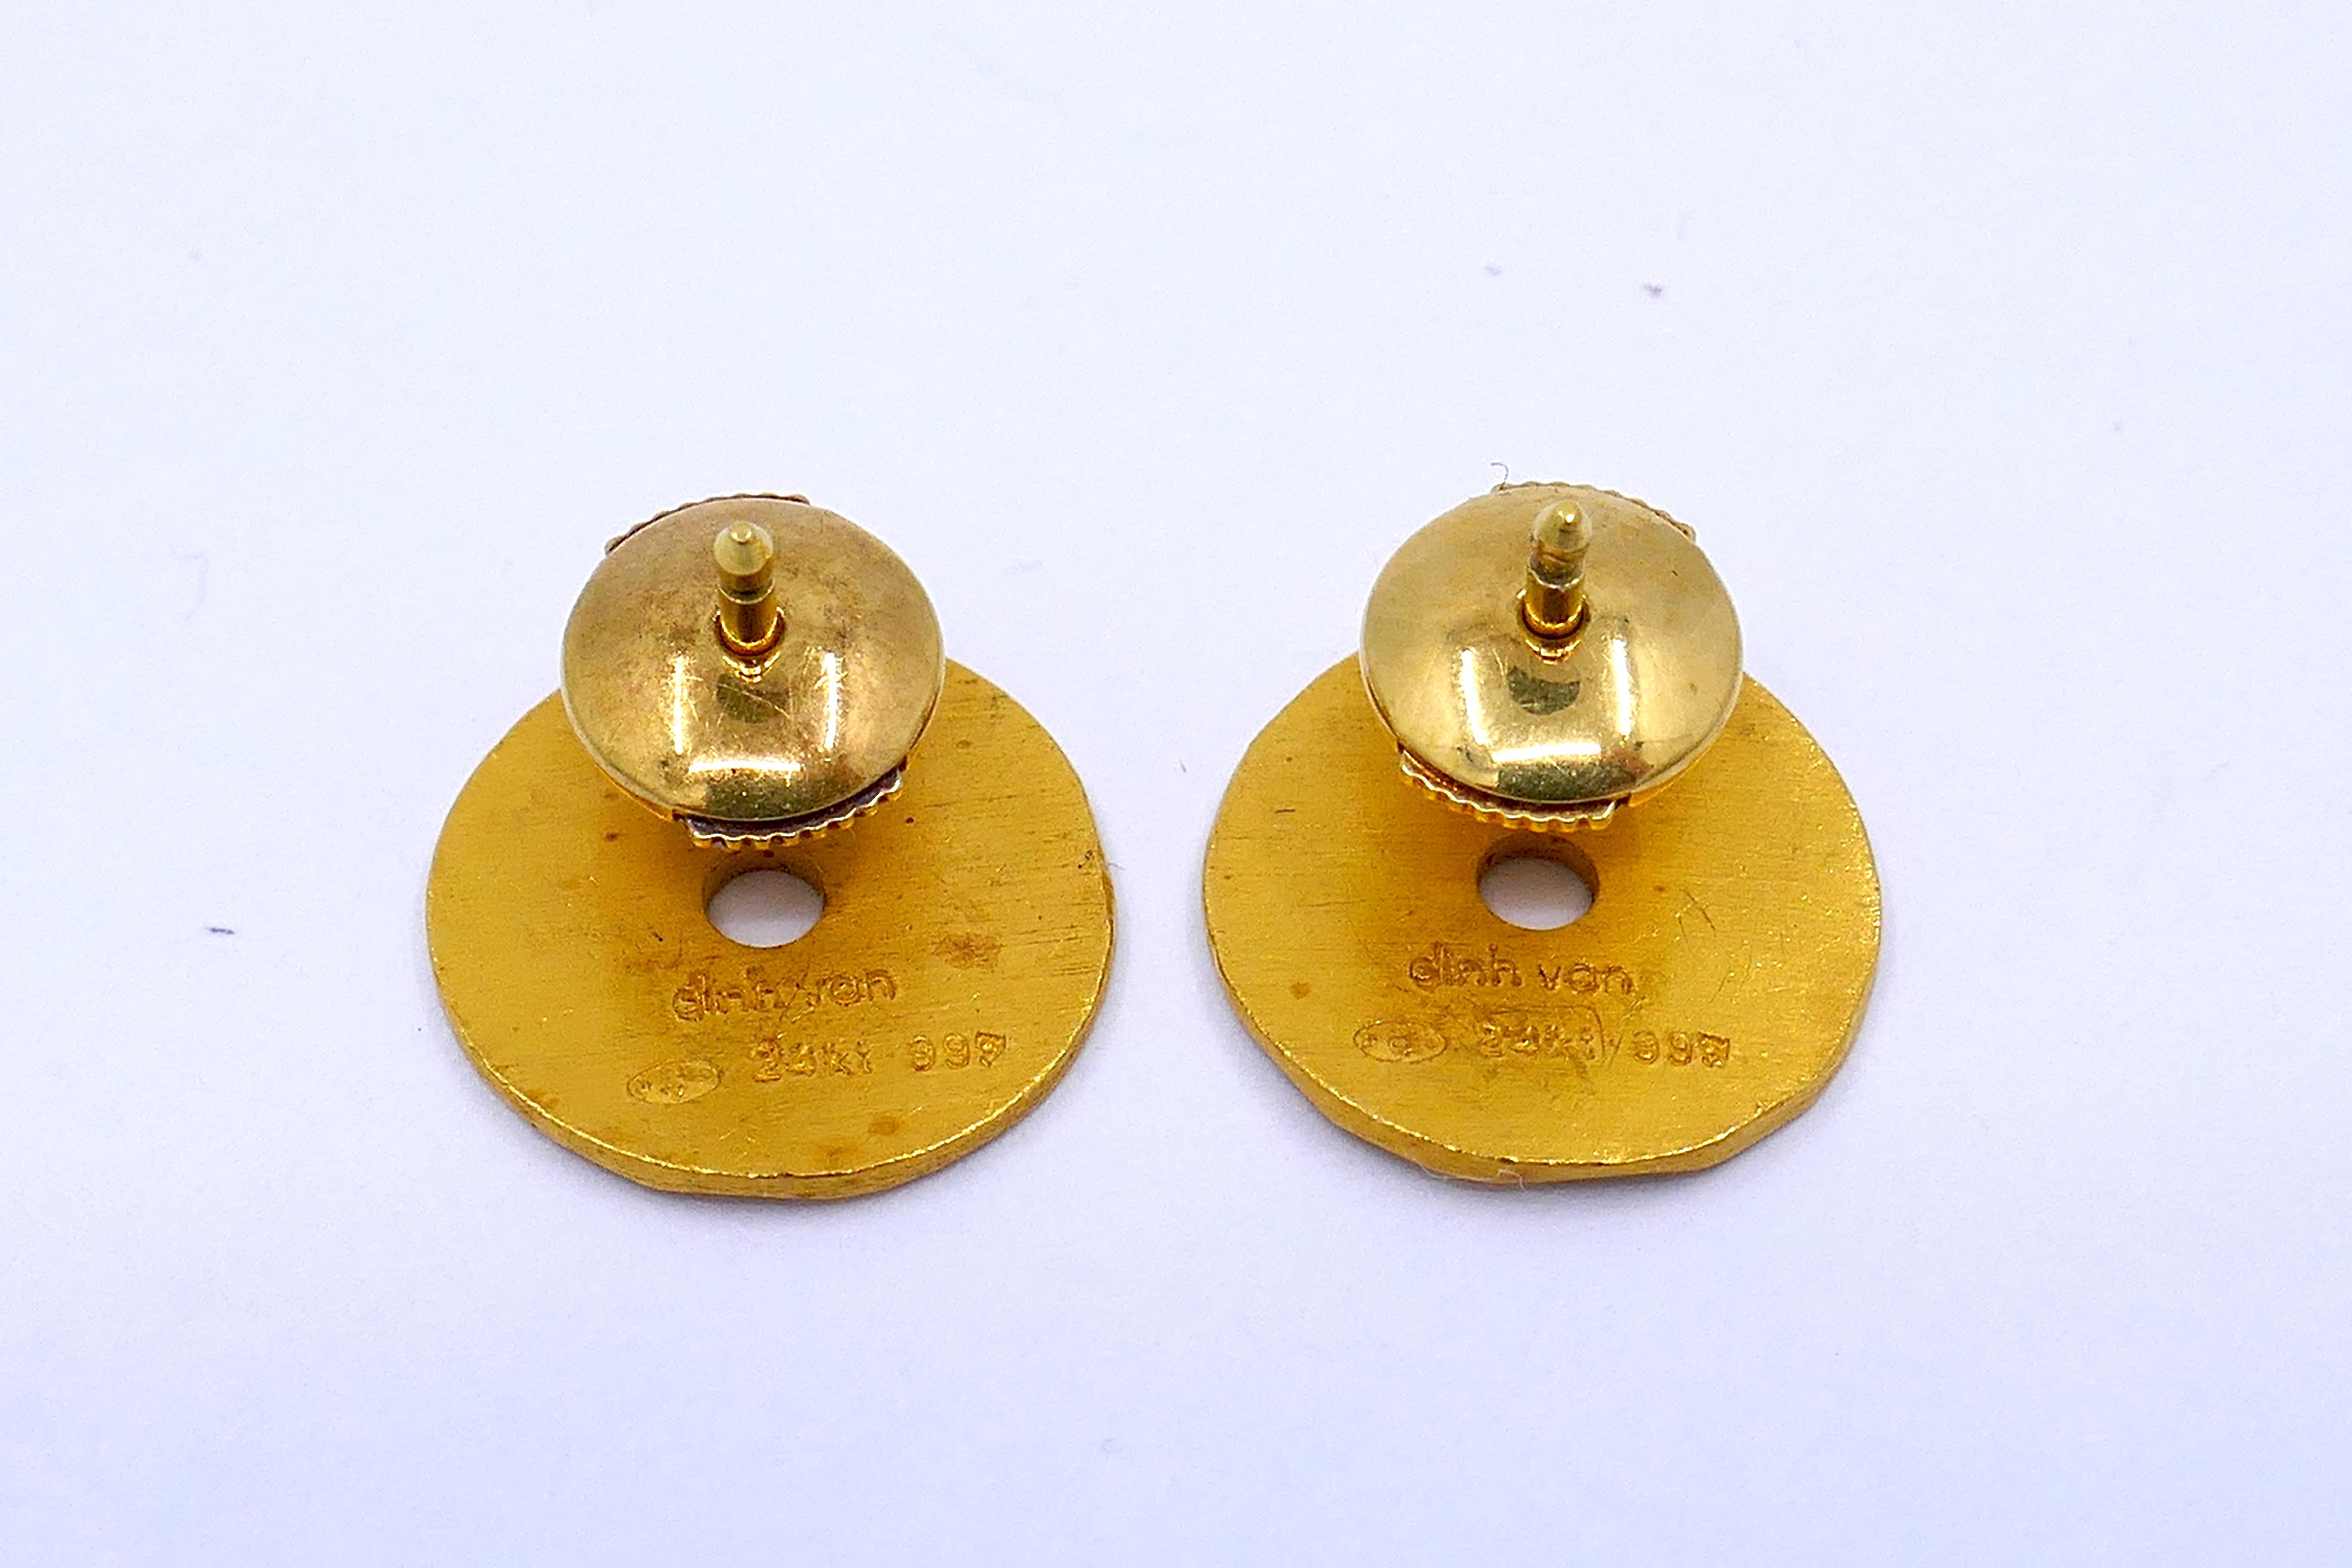 Diese Ohrstecker von Jean Dinh Van sind der Inbegriff von Eleganz und Handwerkskunst. Sie sind aus gehämmertem 24-karätigem Gold gefertigt und für durchbohrte Ohren bestimmt. Die kreisrunden Knopfohrringe mit einem Gewicht von 5 Gramm haben eine